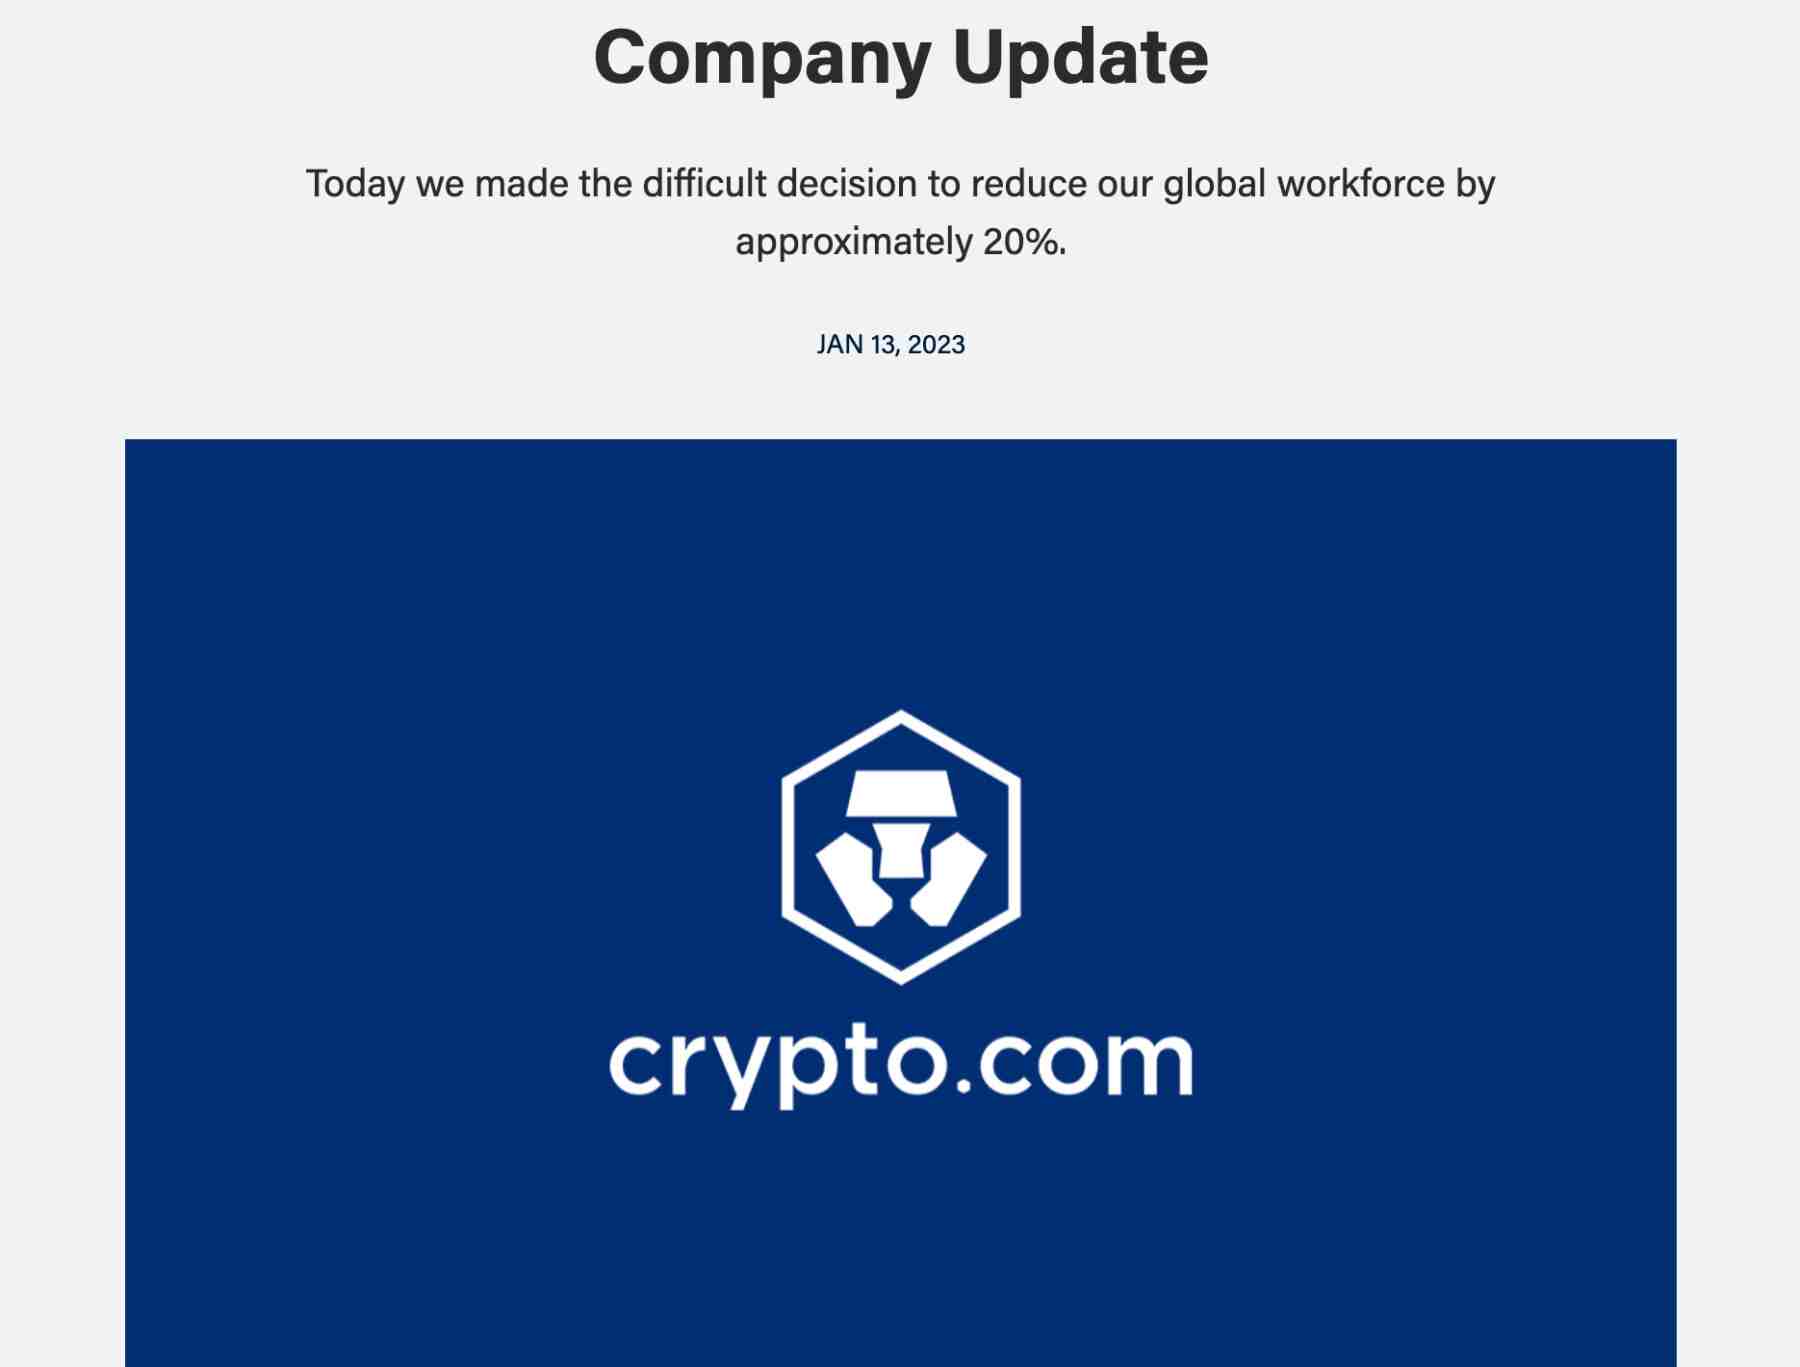 Firmenupdate Crypto.com